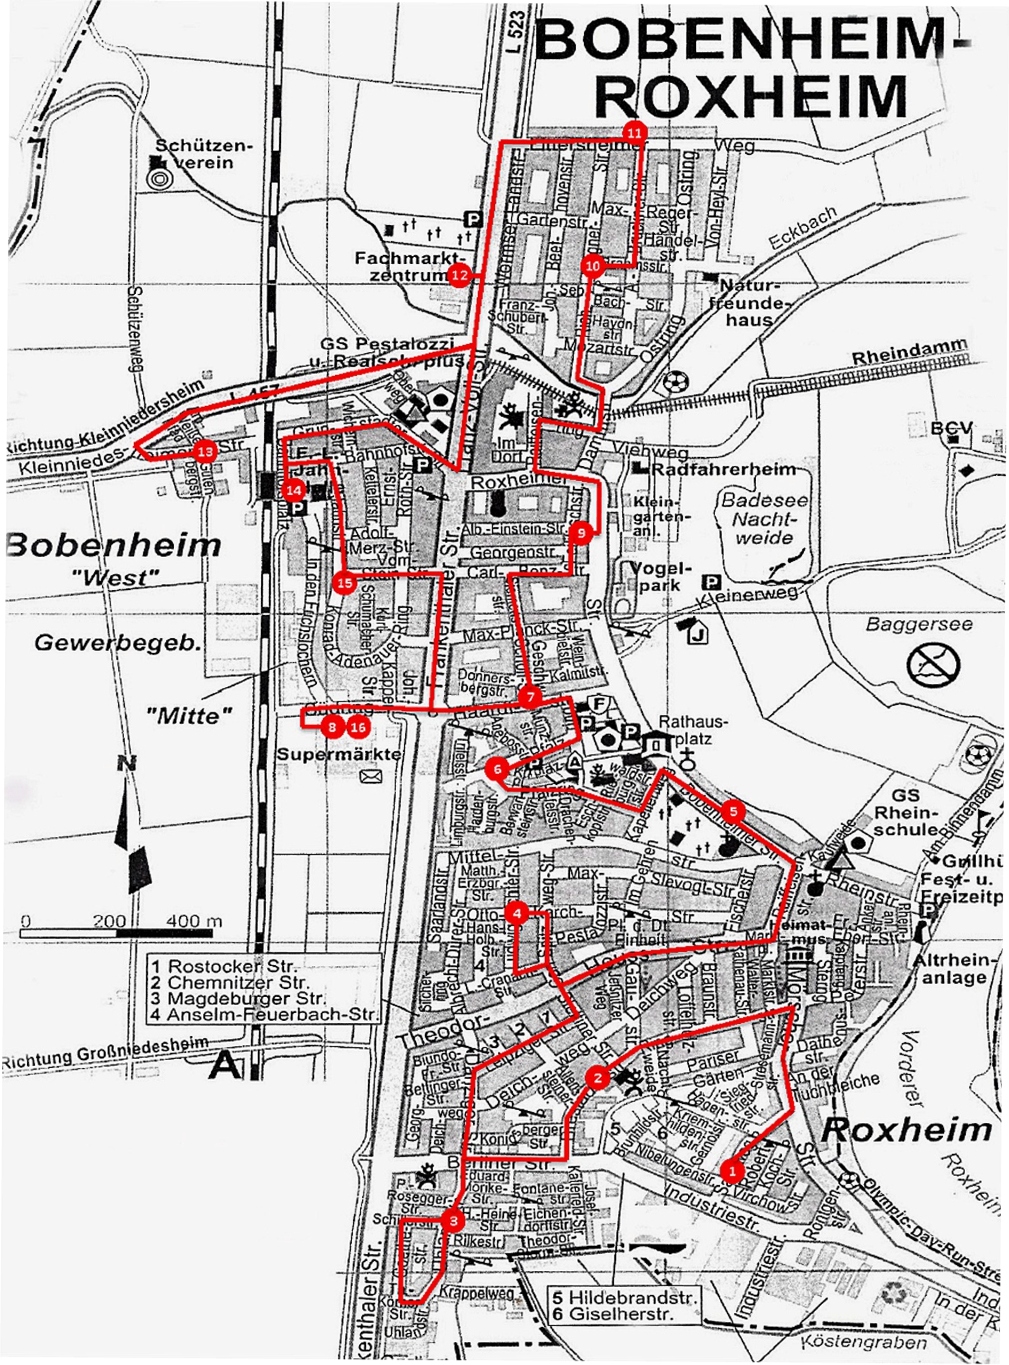 Der Bürgerbus Bobenheim-Roxheim fährt in der Gemeinde nach einem festen Fahrplan. Grafik (c) Bürgerbus Gemeinde Bobenheim-Roxheim